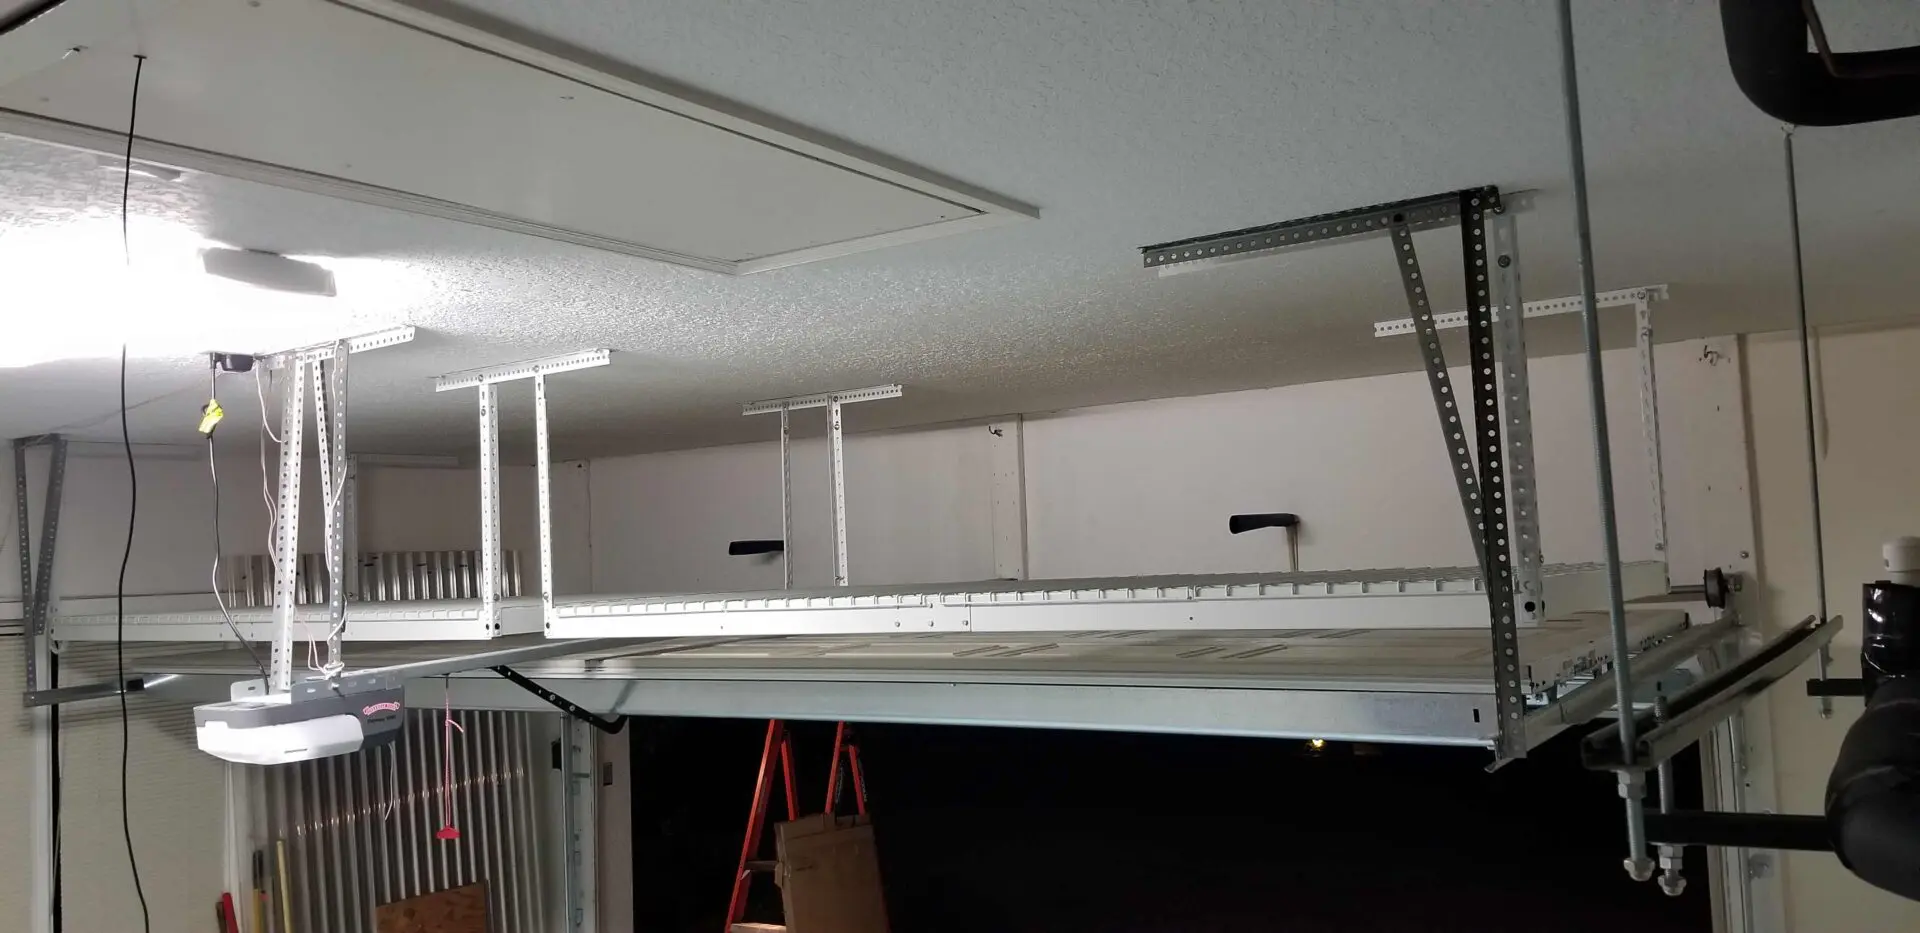 An overhead rack just above the garage door